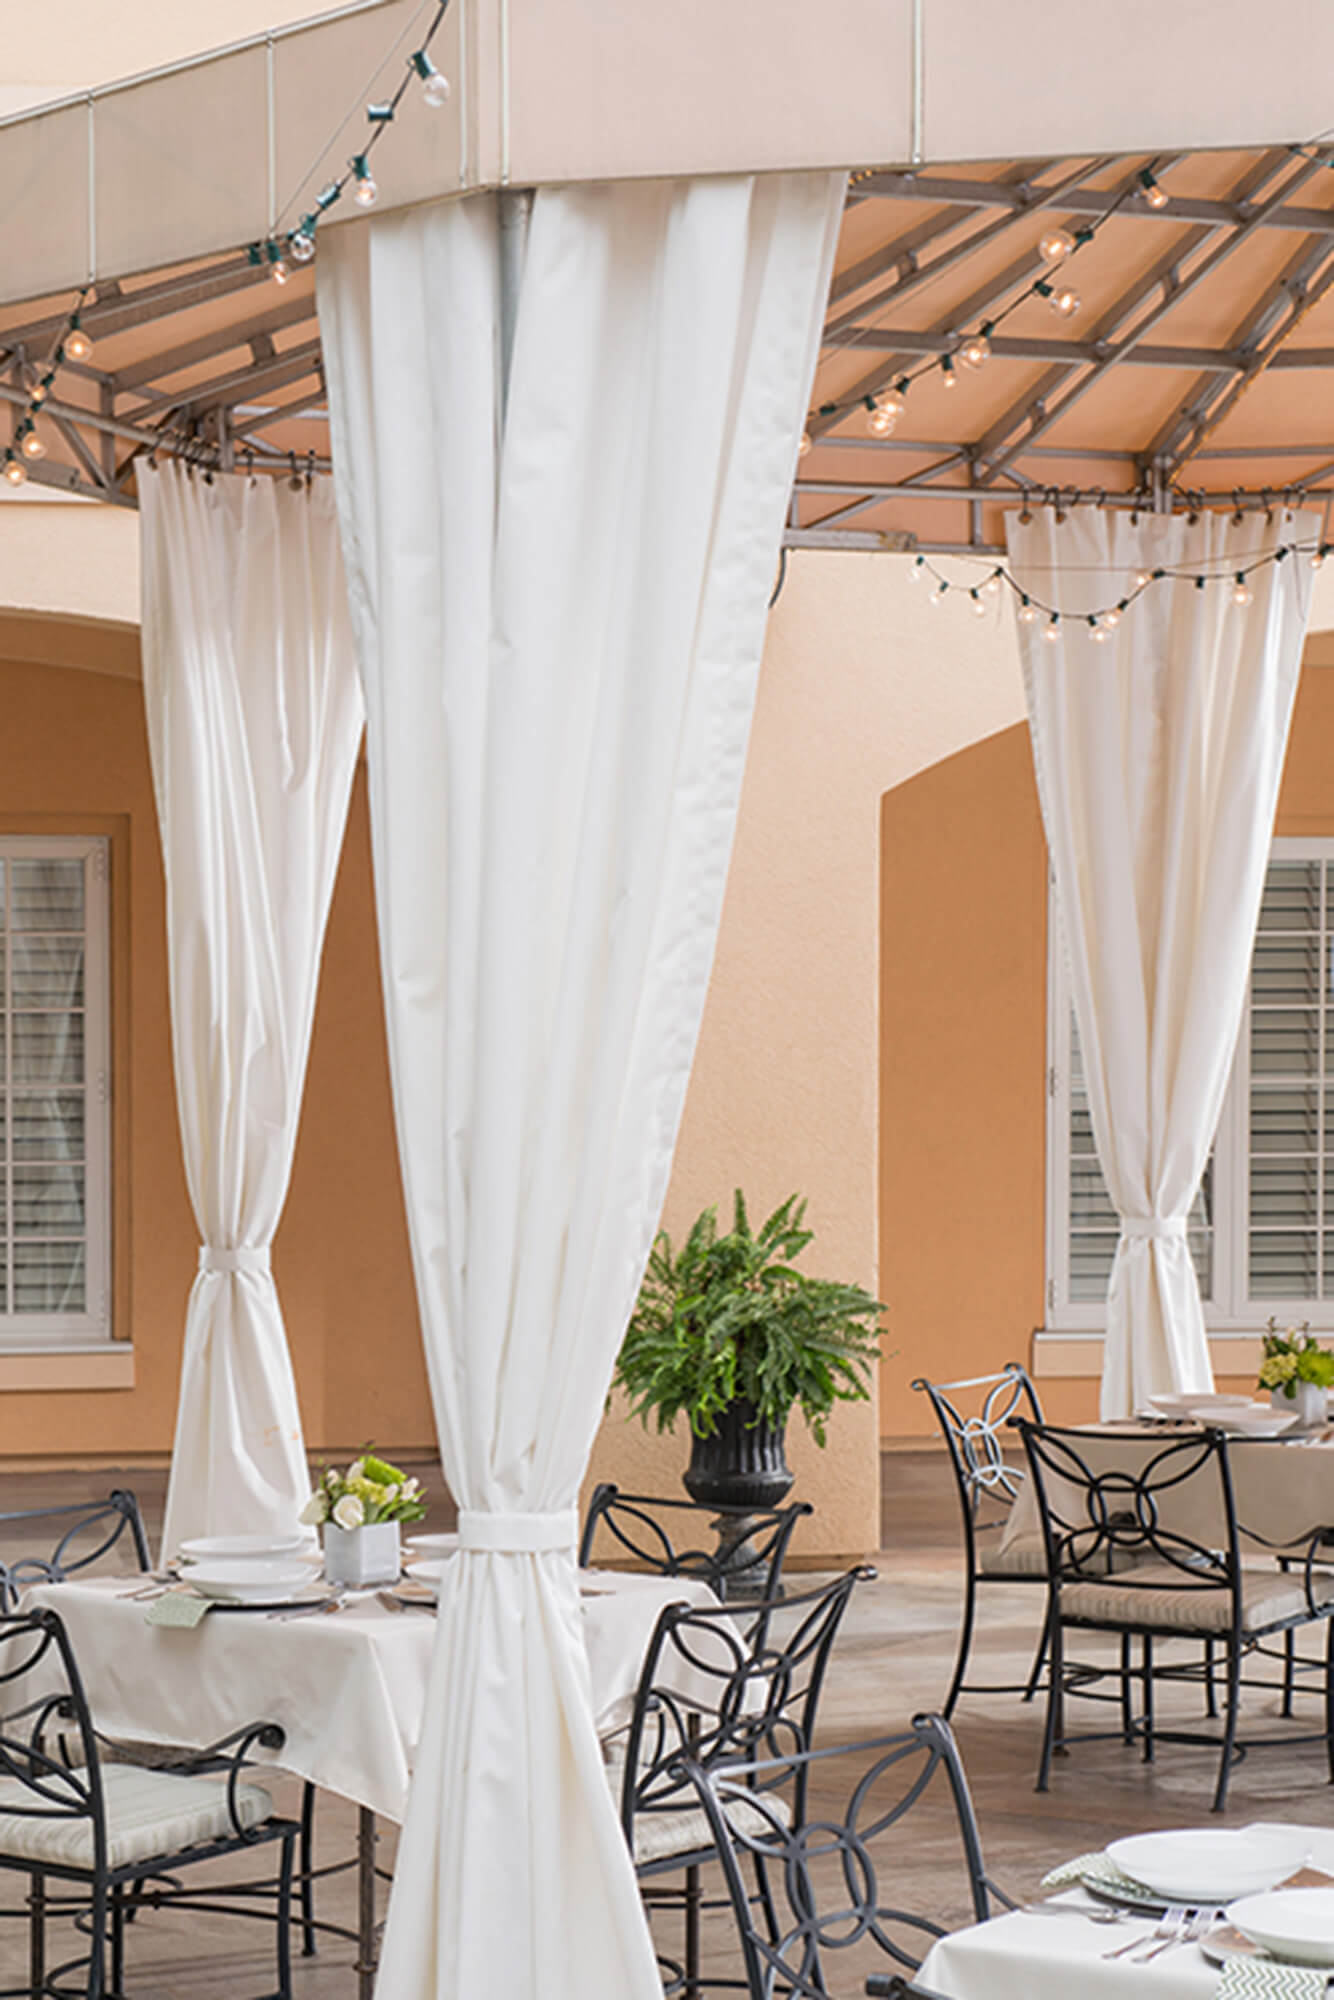 Un patio de restaurante protegido por un toldo de marco fijo utilizando tela Sunbrella Clarity de color beige.